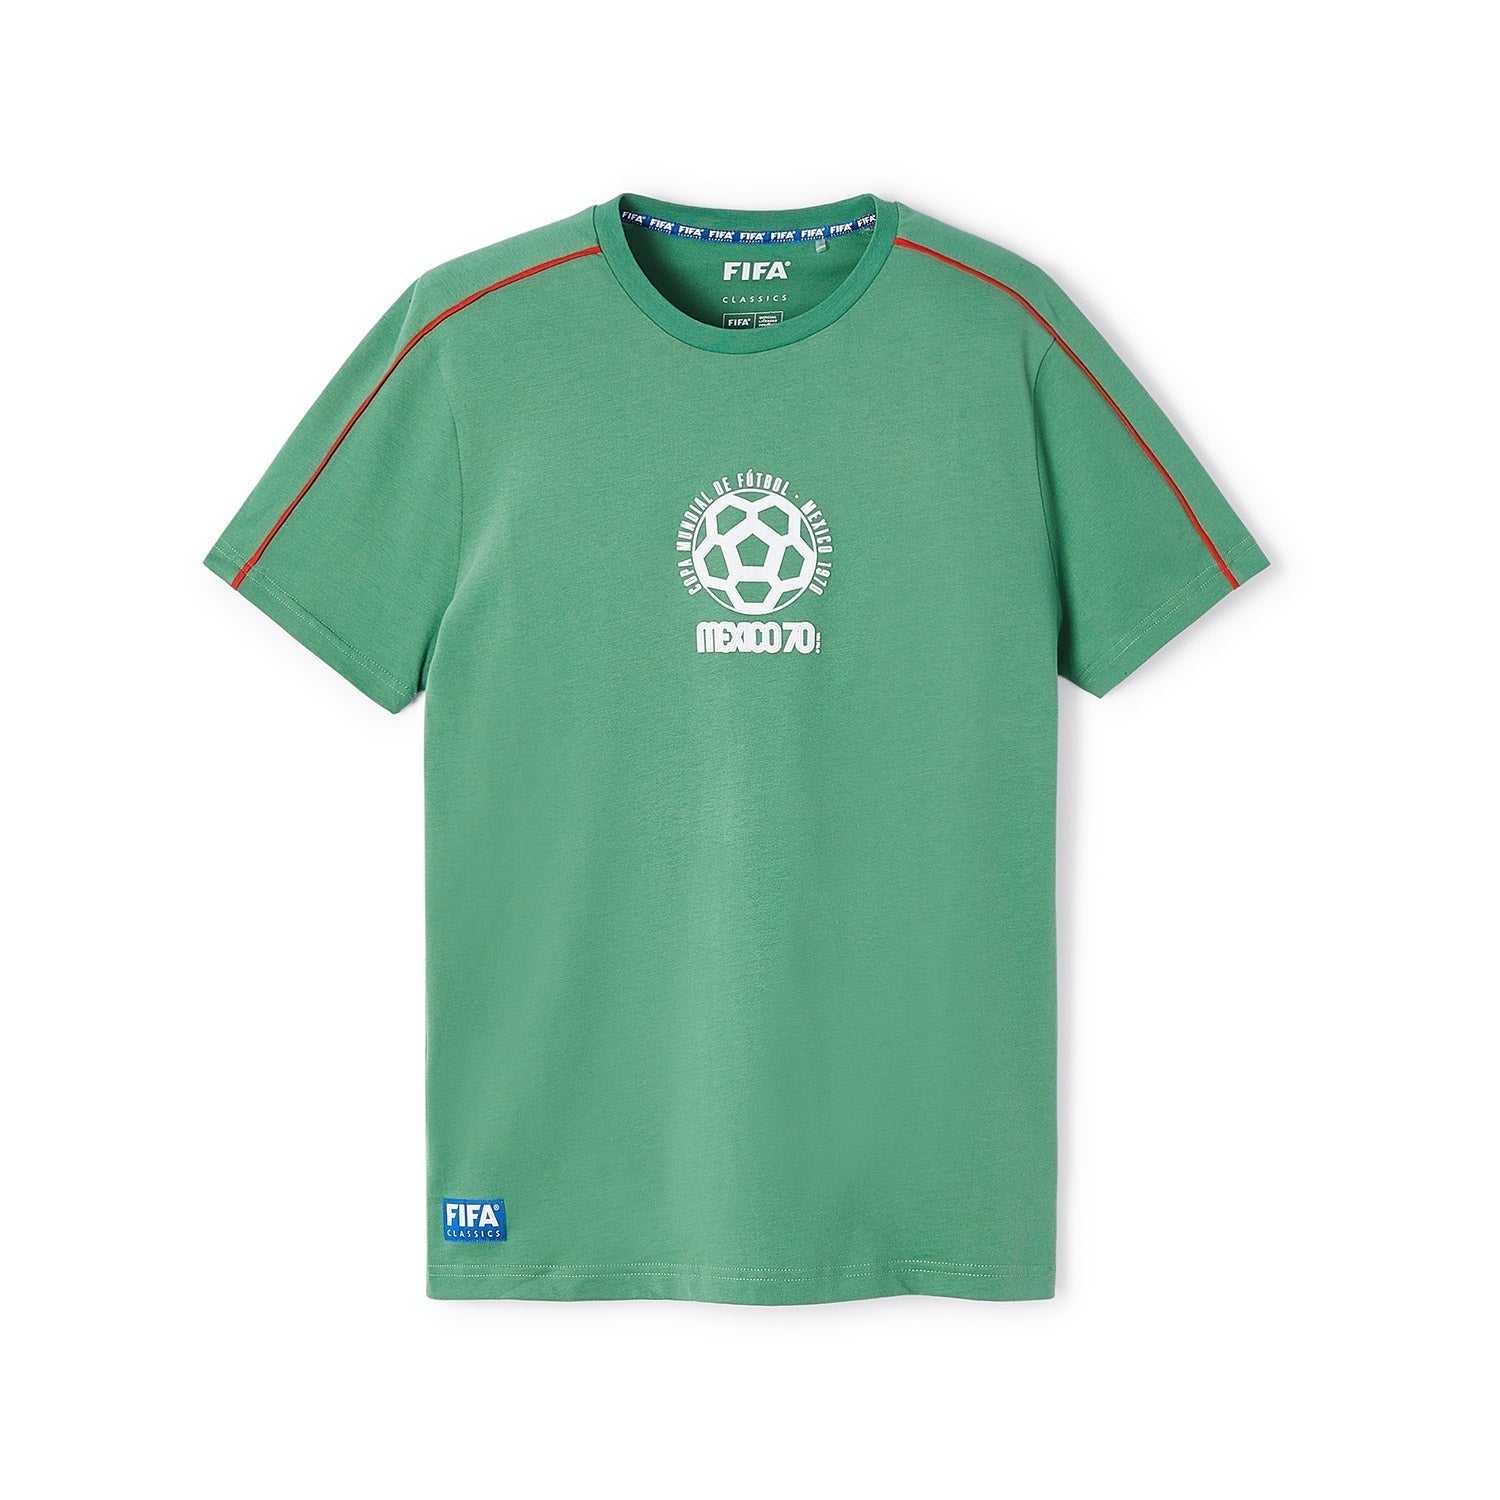 FIFA Classics Mexico '70 - Emblem Text T-Shirt